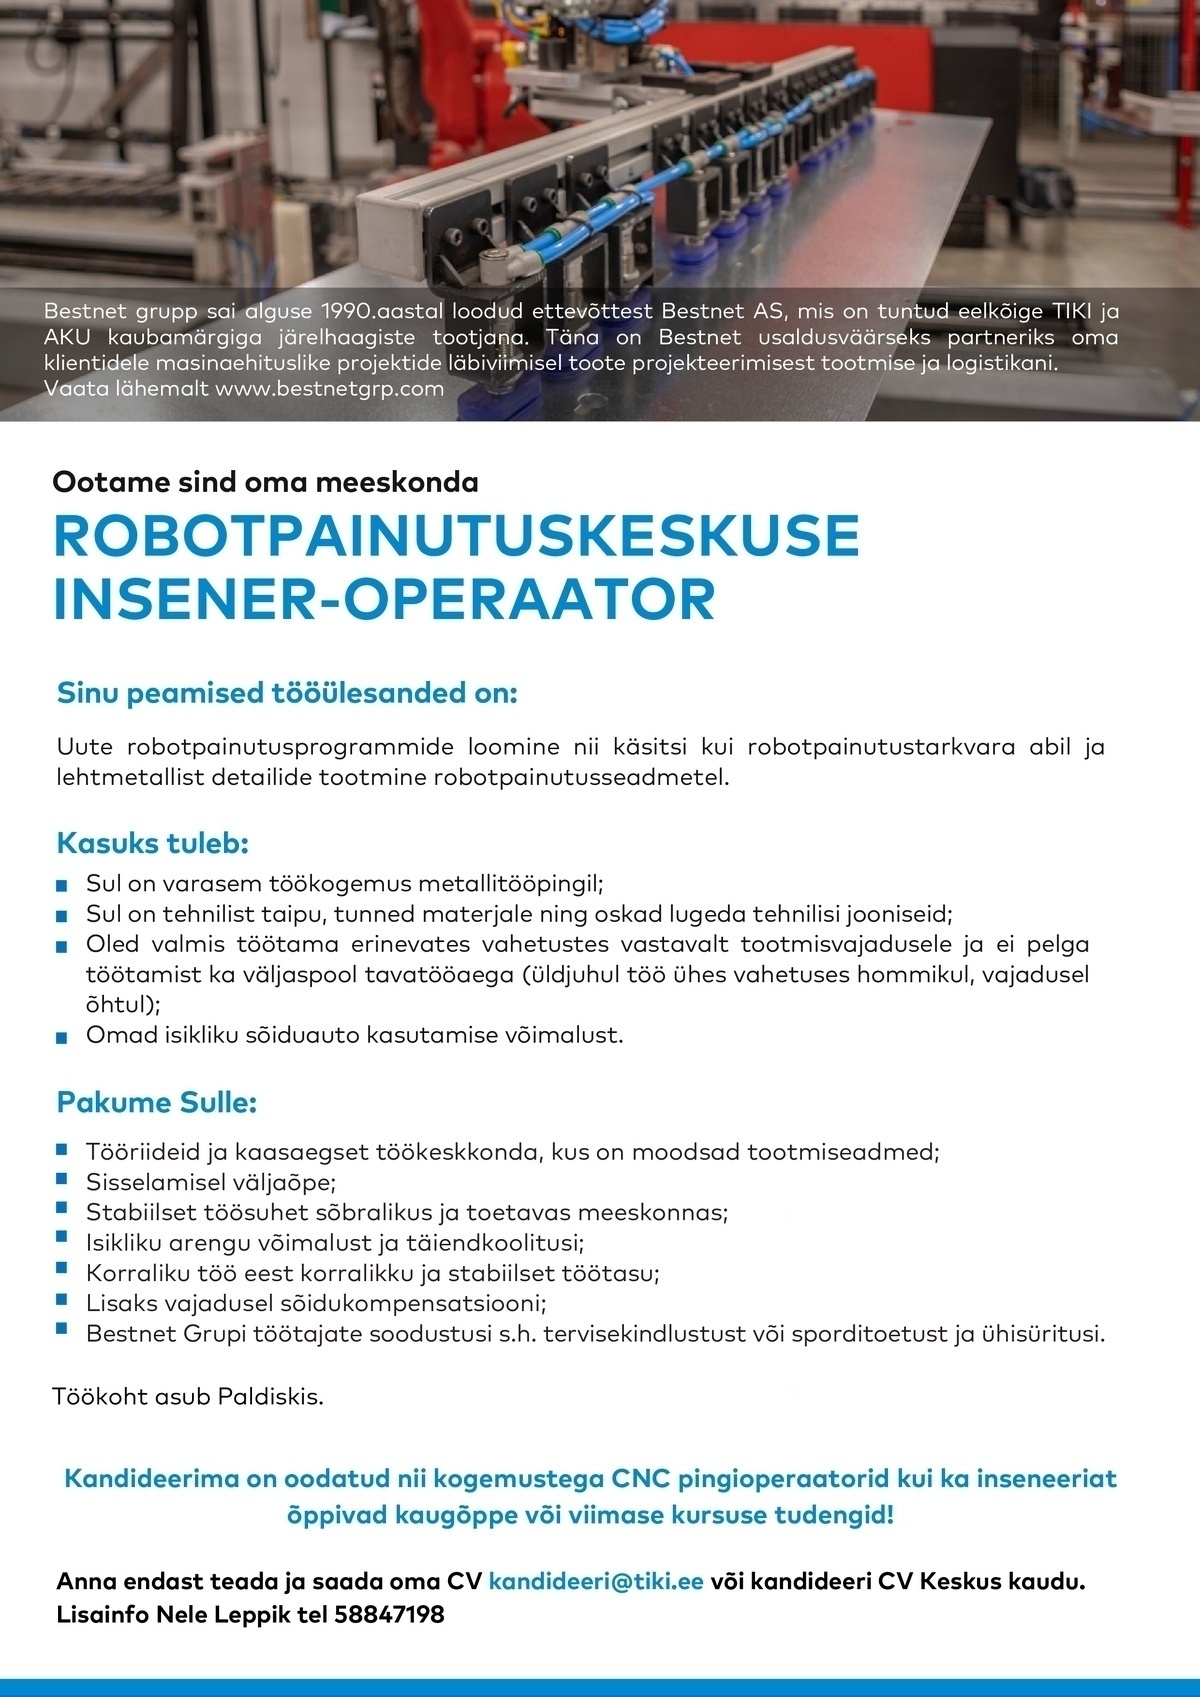 Bestnet AS Robotpainutuskeskuse insener–operaator